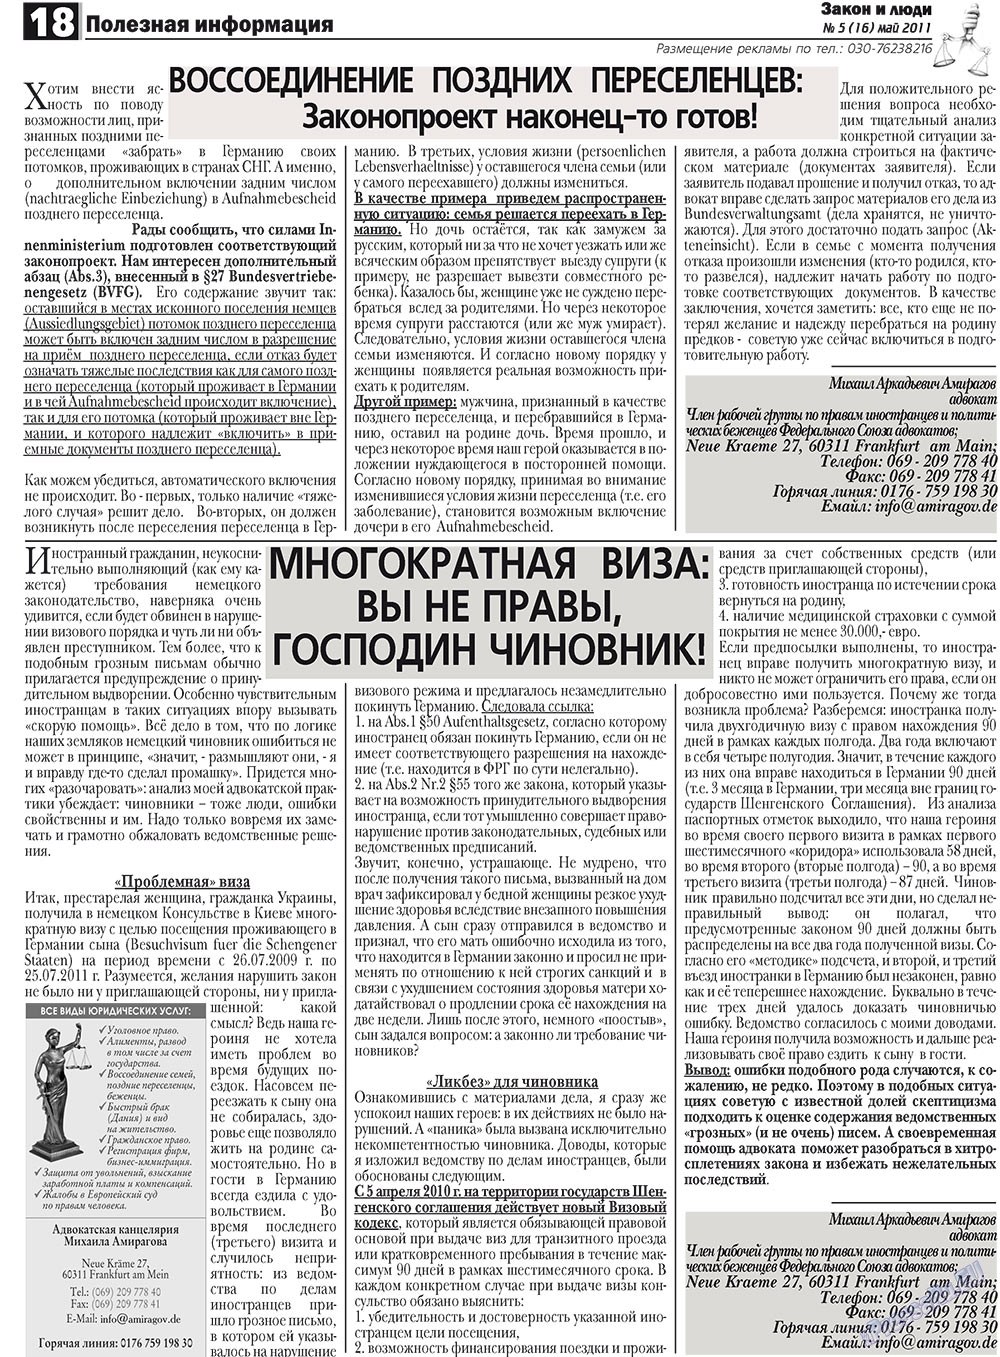 Закон и люди, газета. 2011 №5 стр.18